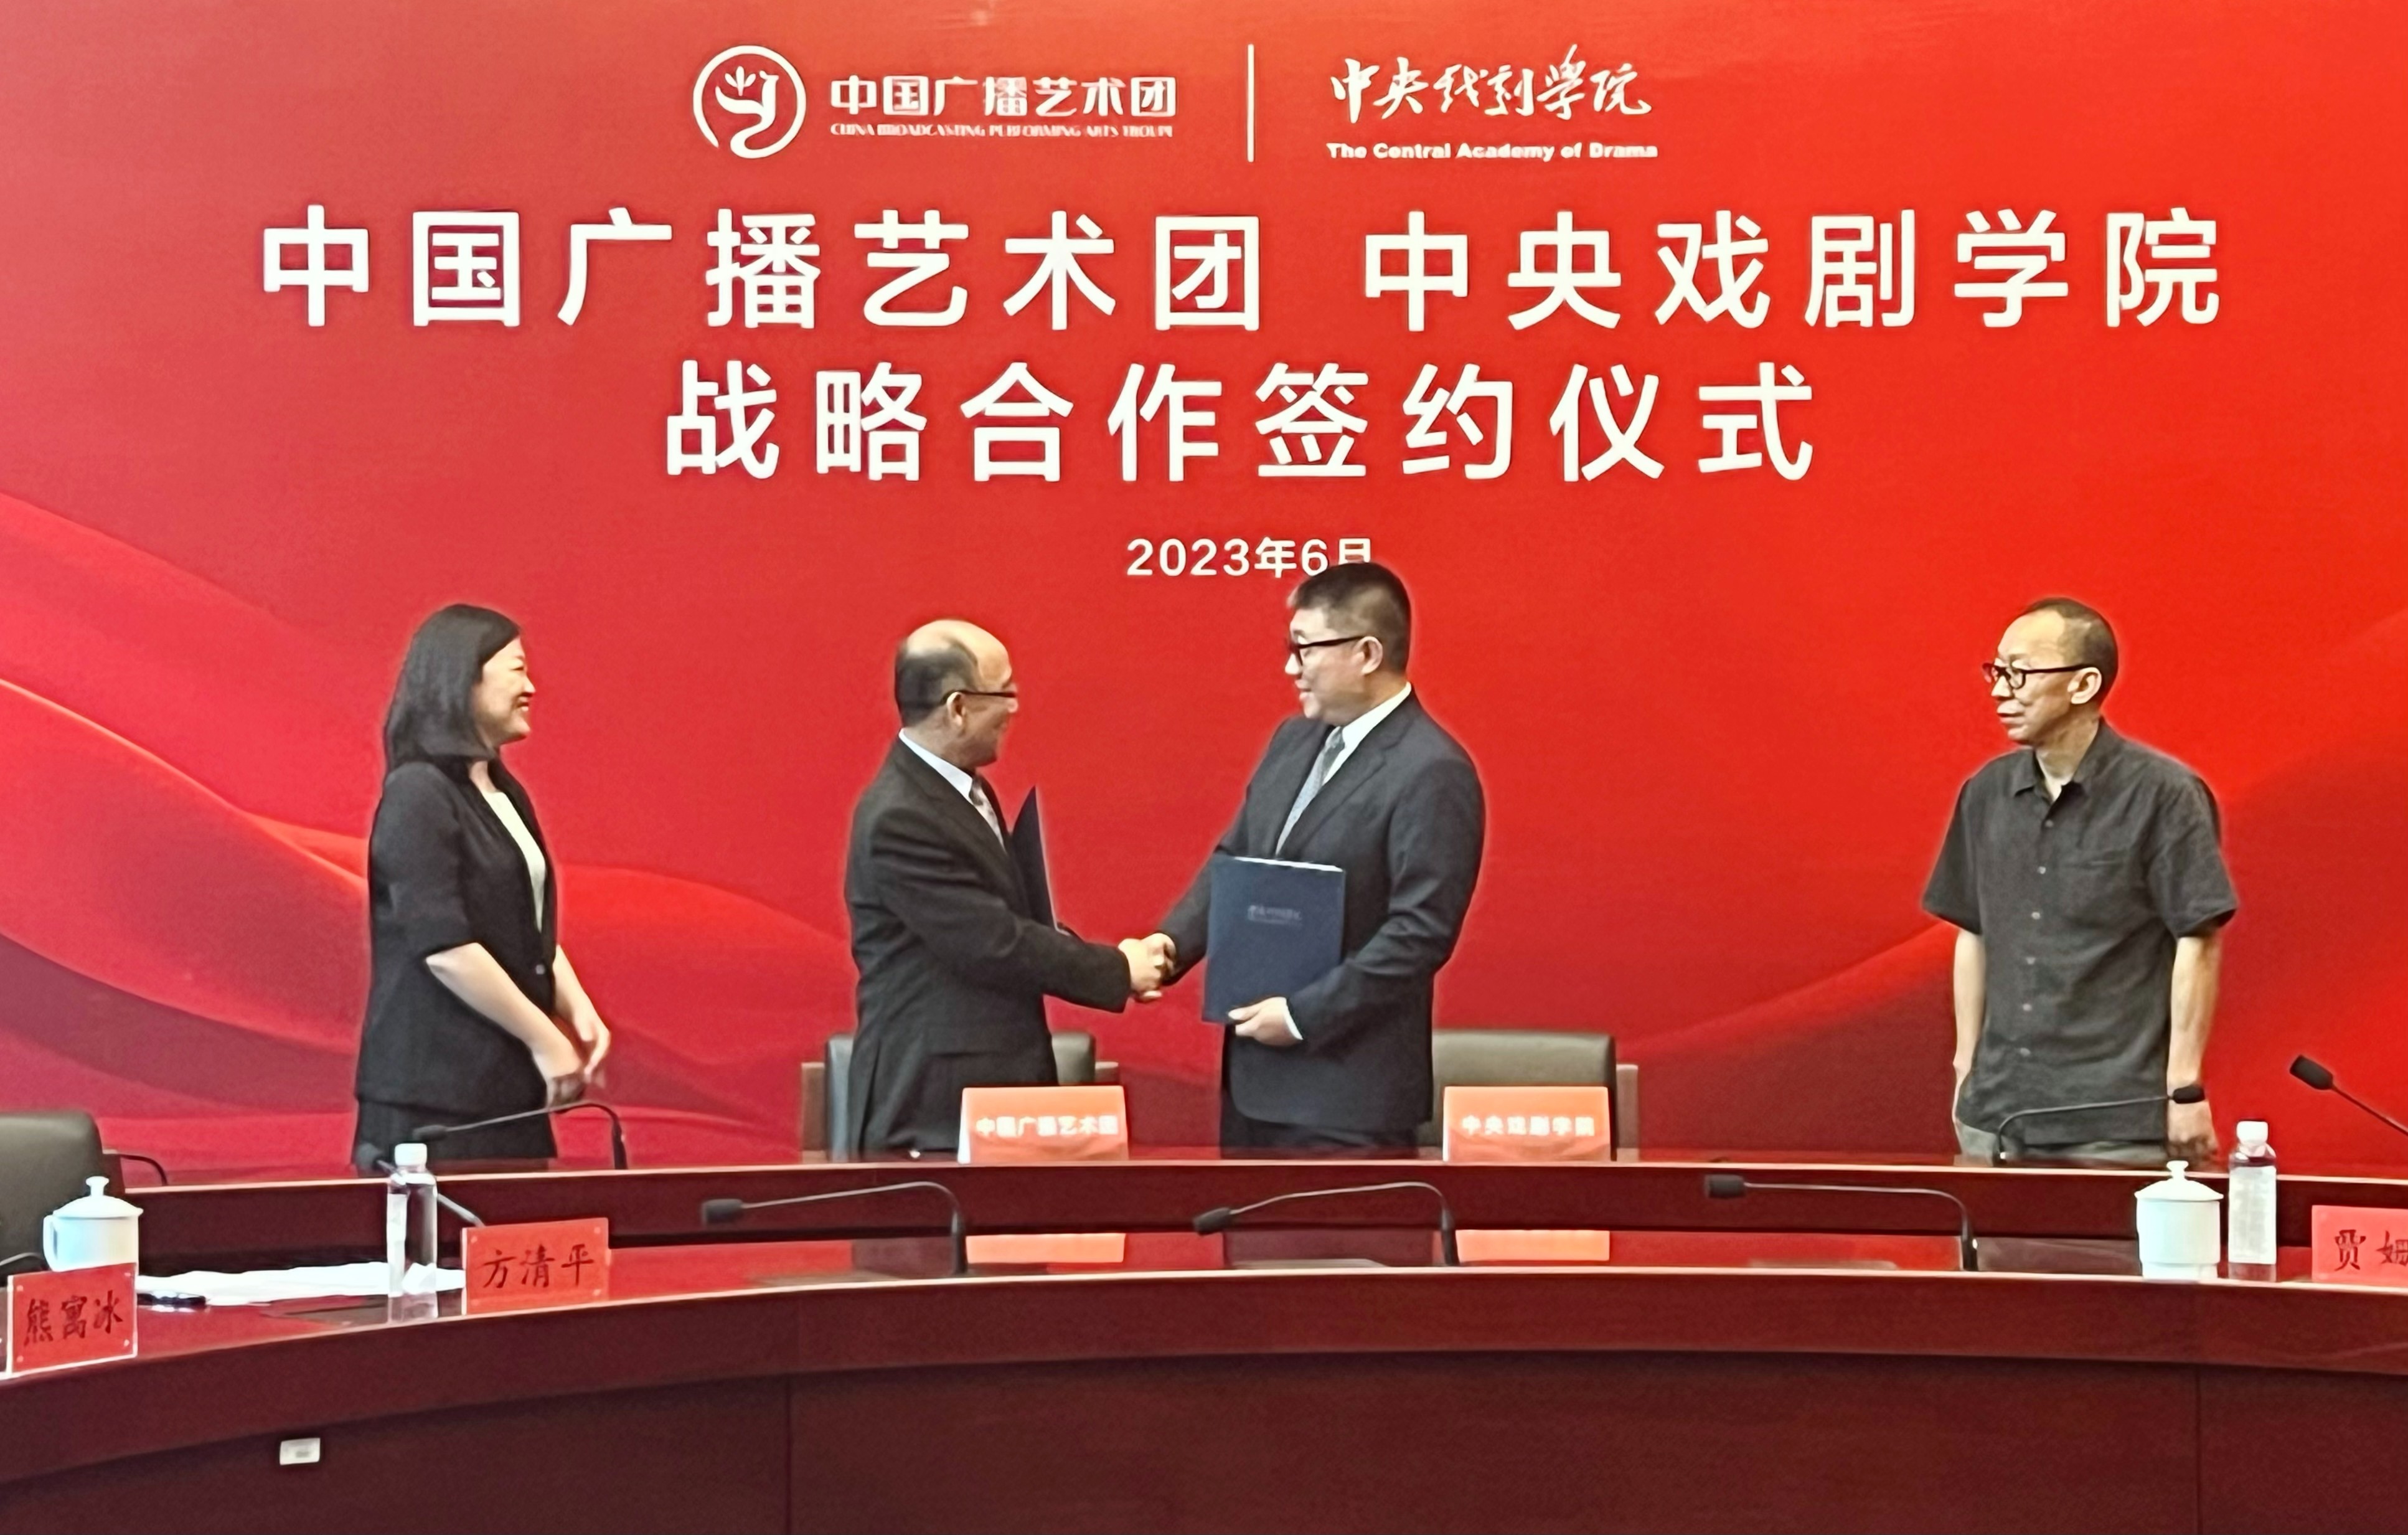 中国广播艺术团与中央戏剧学院签约战略合作